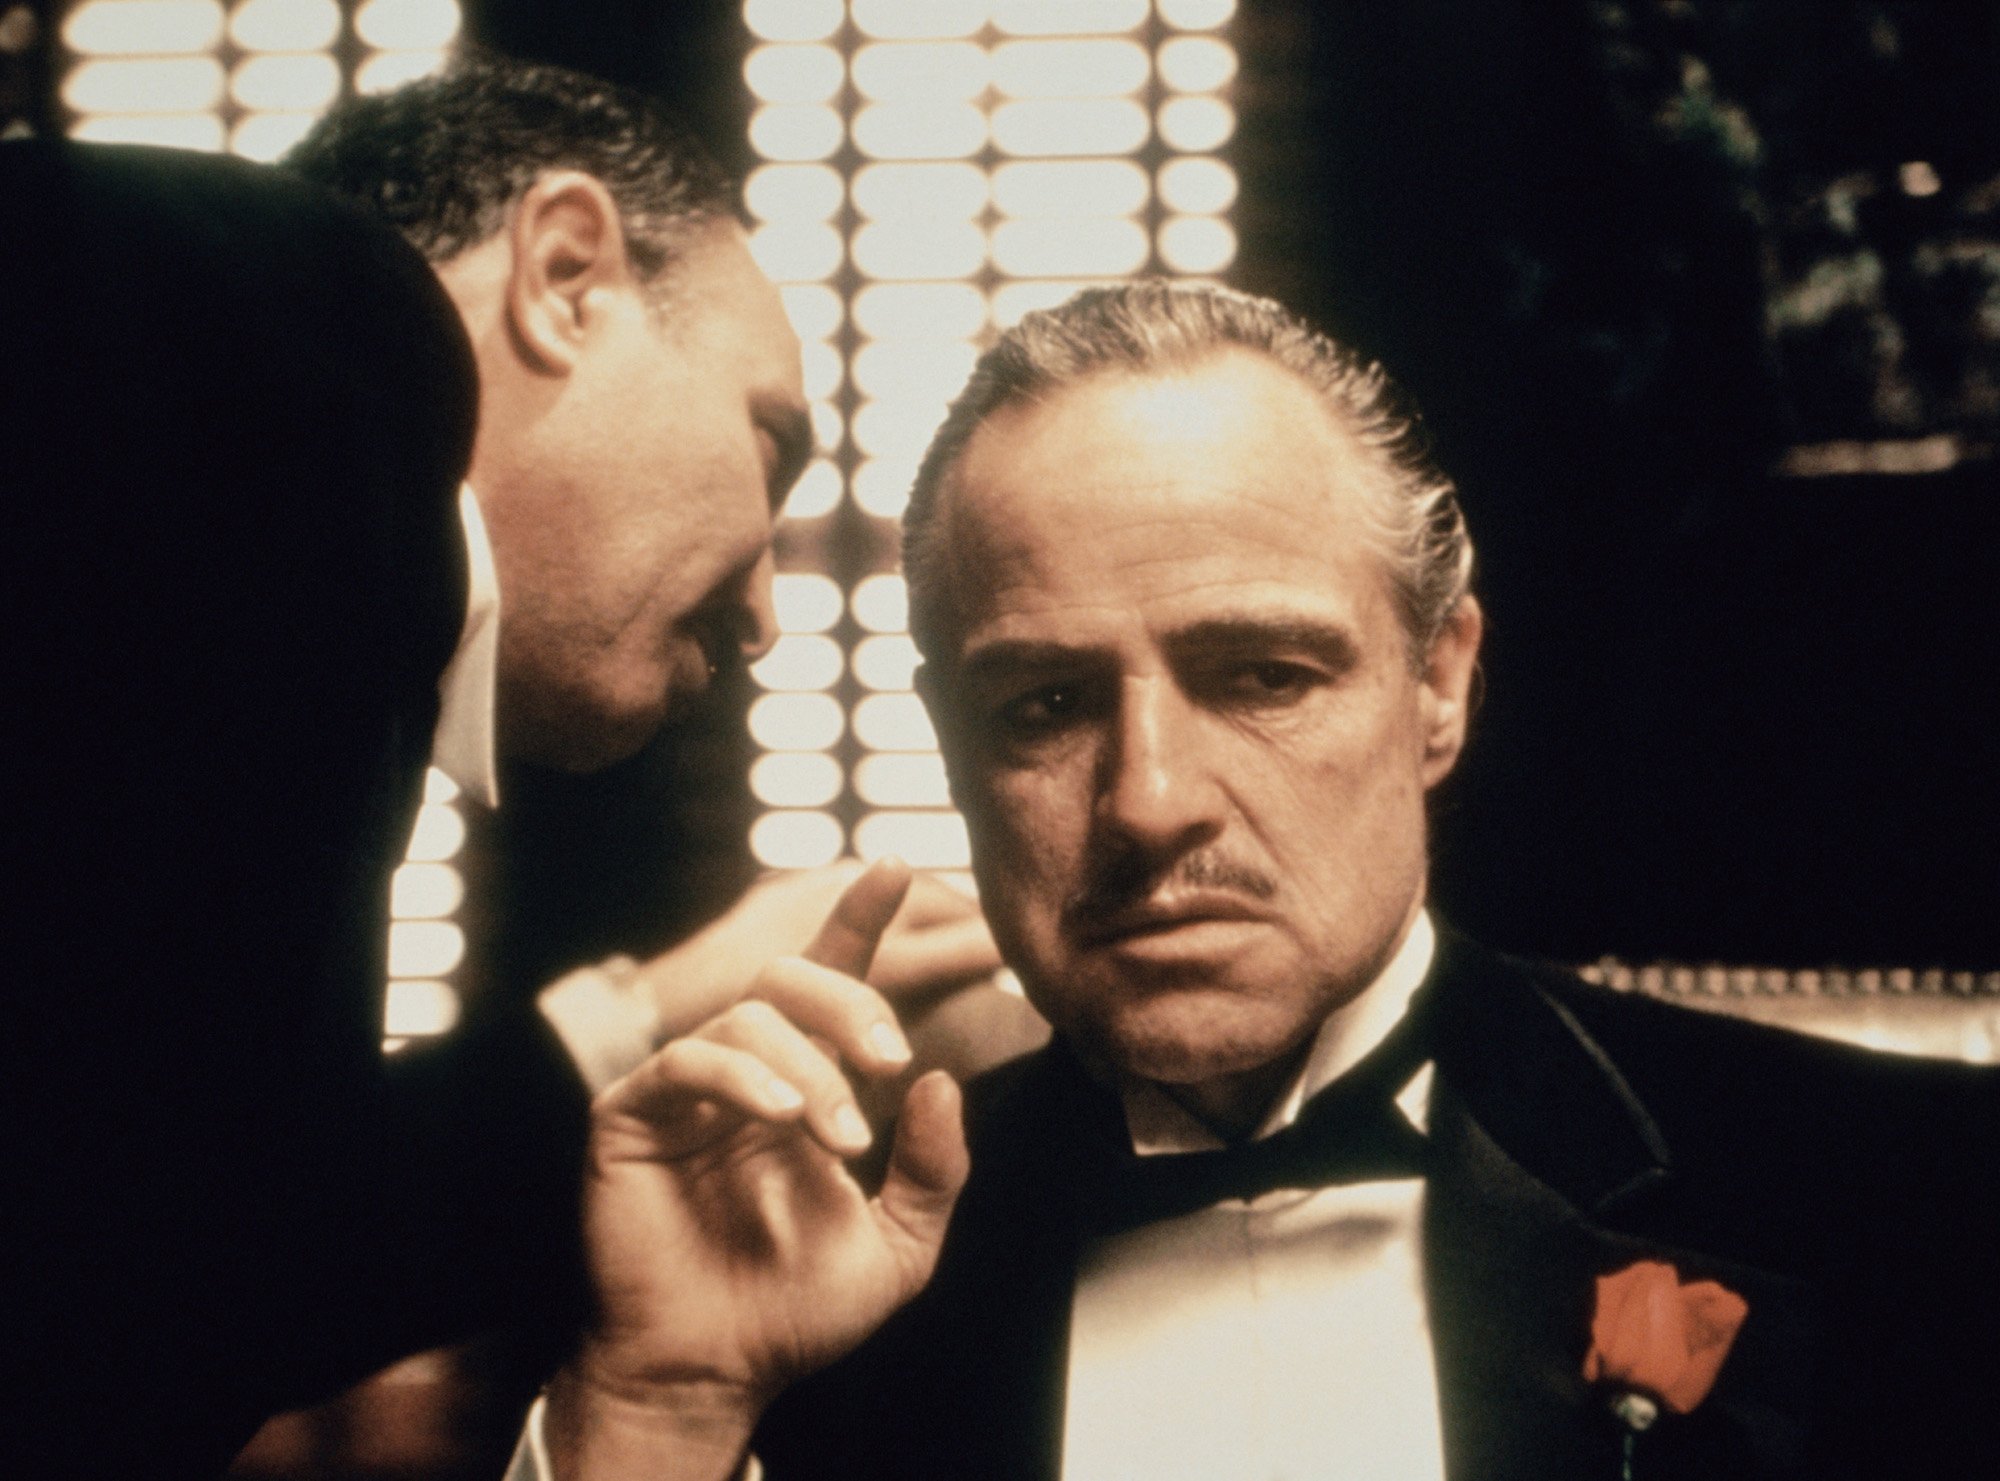 'The Godfather' cast members Salvatore Corsitto whispers into Marlon Brando's ear